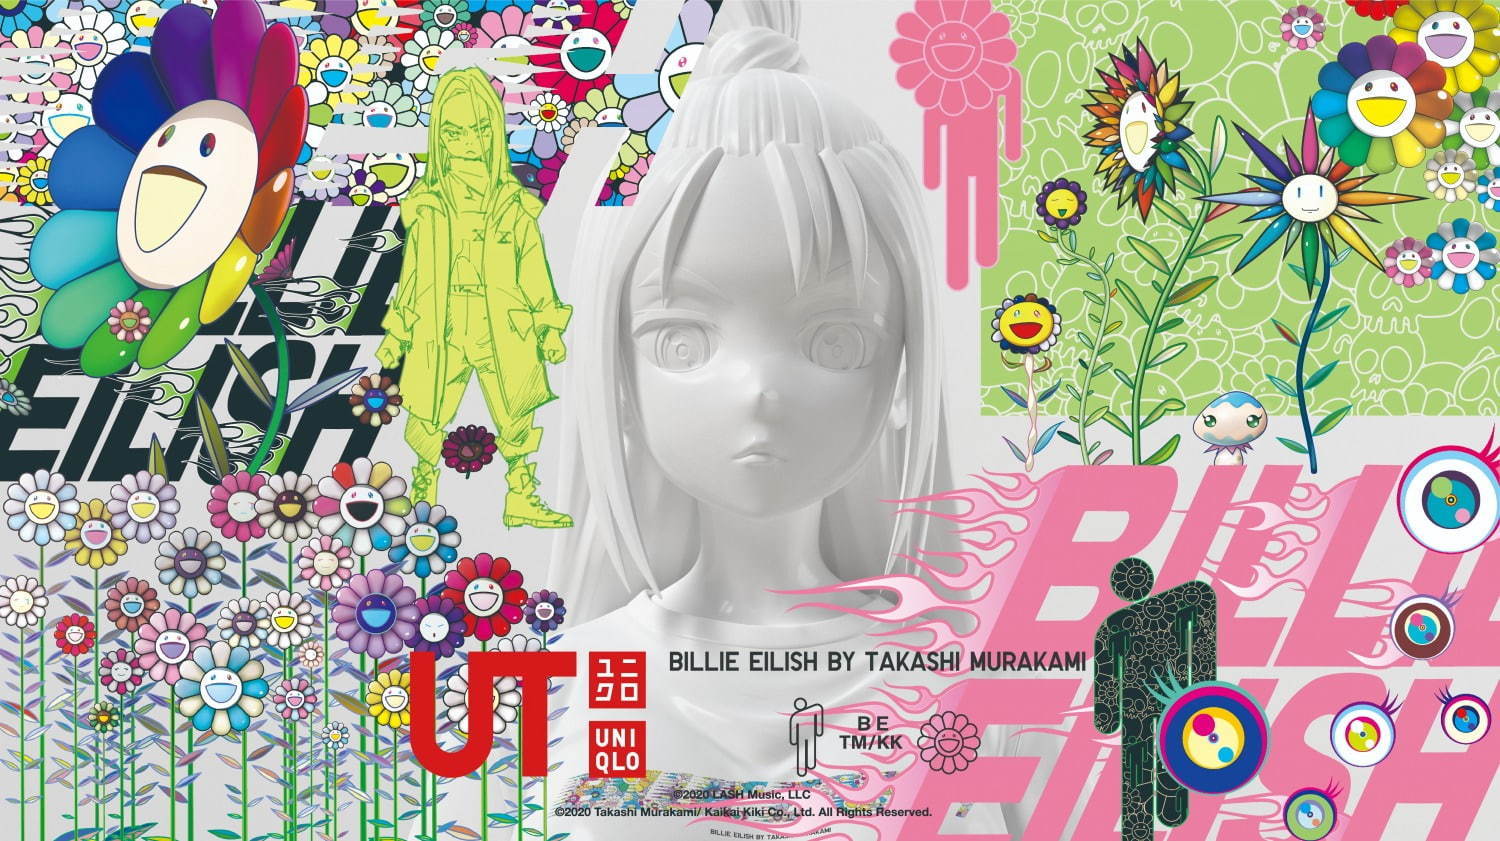 Uniqlo Billie Eilish And Takashi Murakami Ut Collaboration Japan Web Magazine